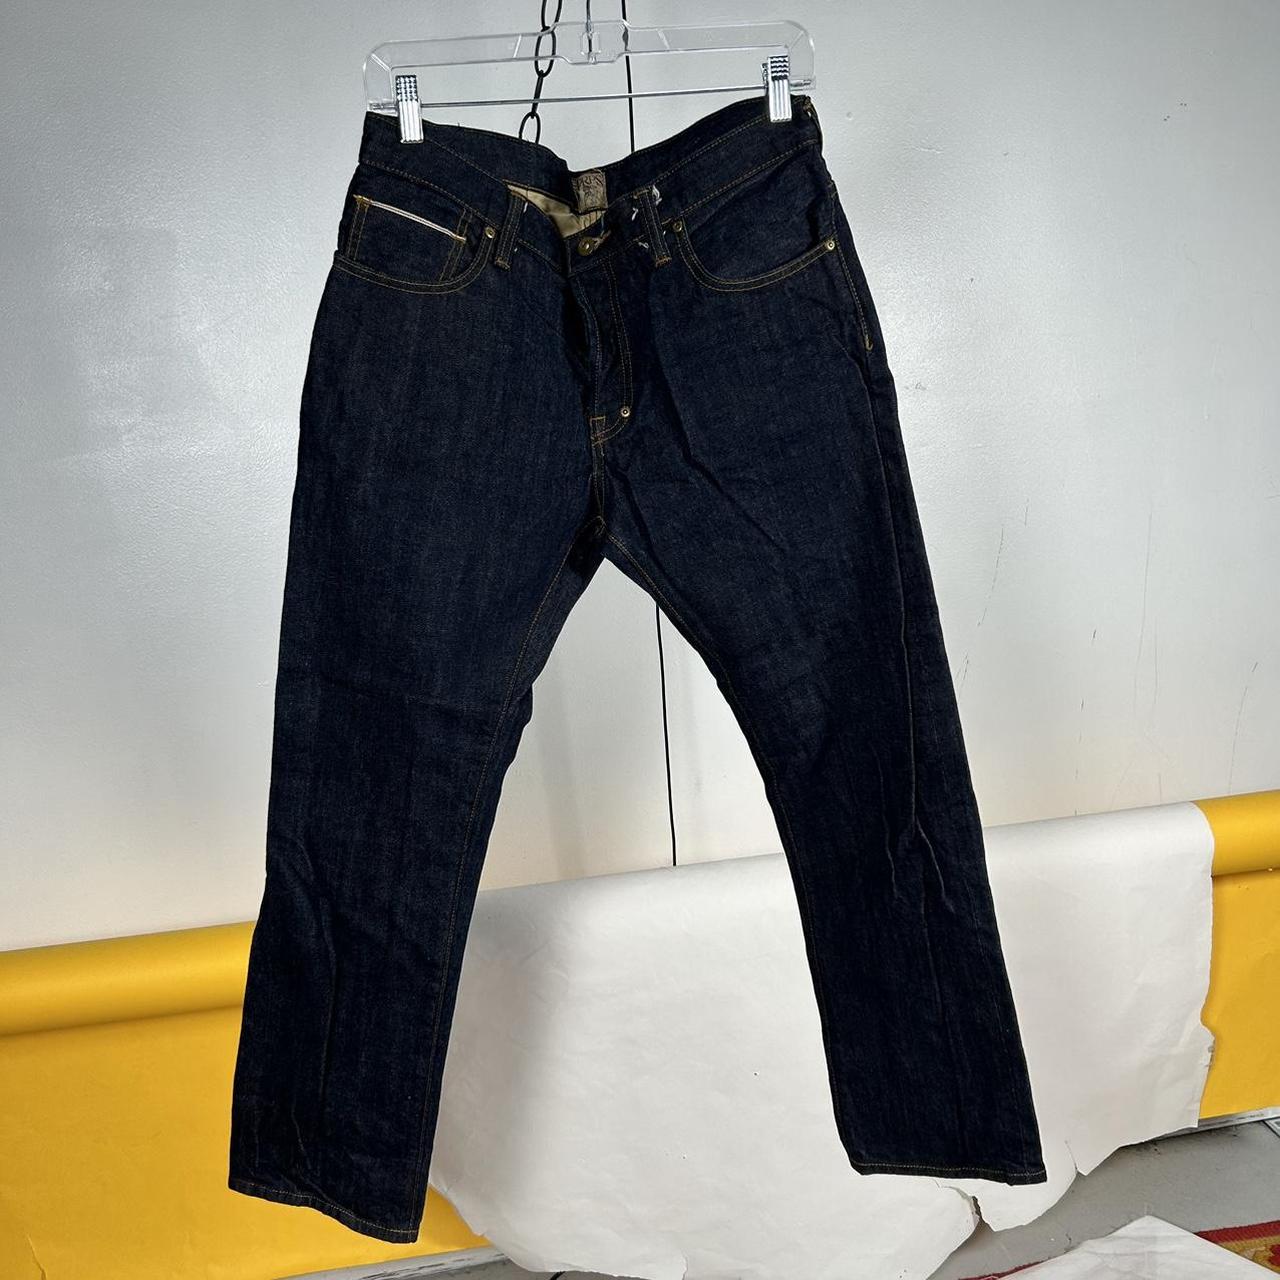 PRPS Japanese redline selvedge jeans • Size... - Depop